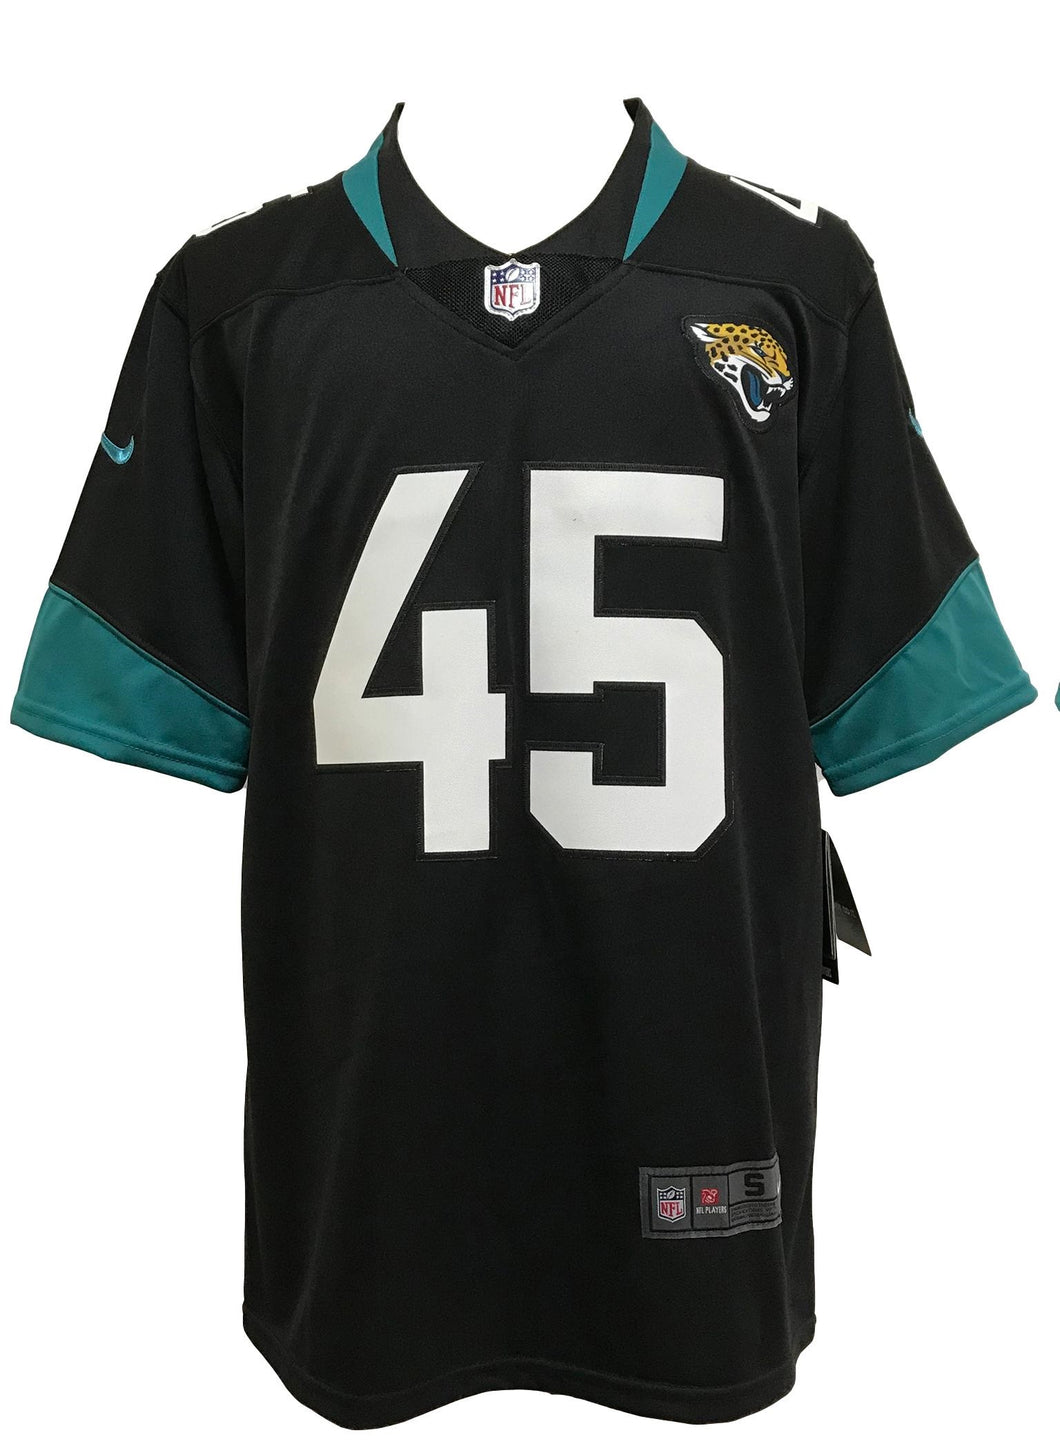 Camisa Jaksonville Jaguars K'Lavon Chaisson #45 NFL